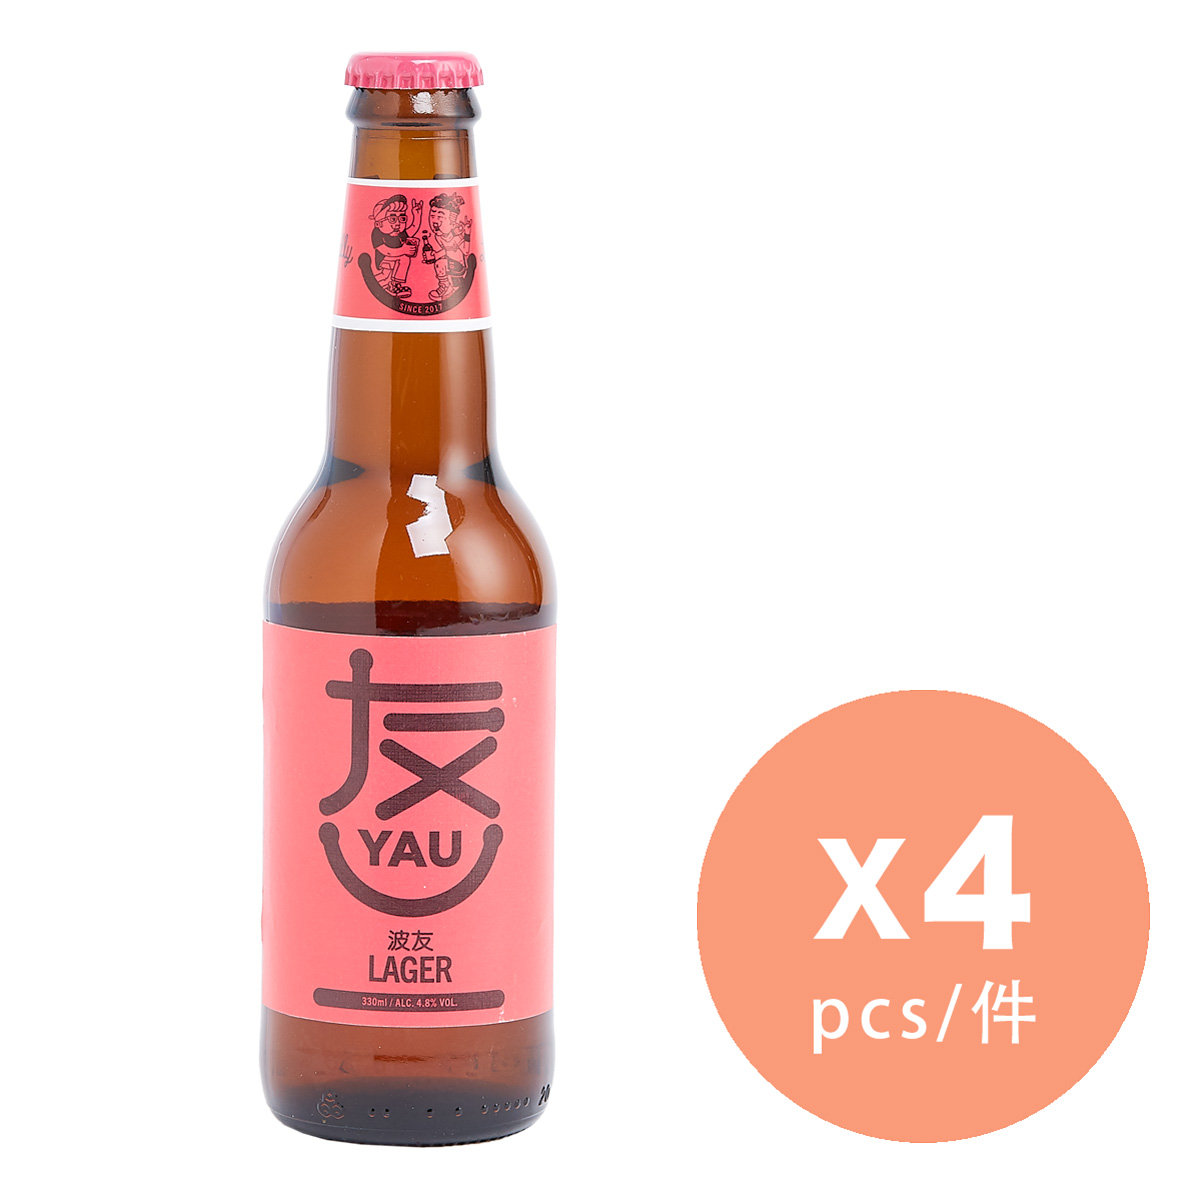 友 YAU - 波友 Lager 啤酒 - Lager - 330ml x 4樽 (新舊包裝隨機發送)